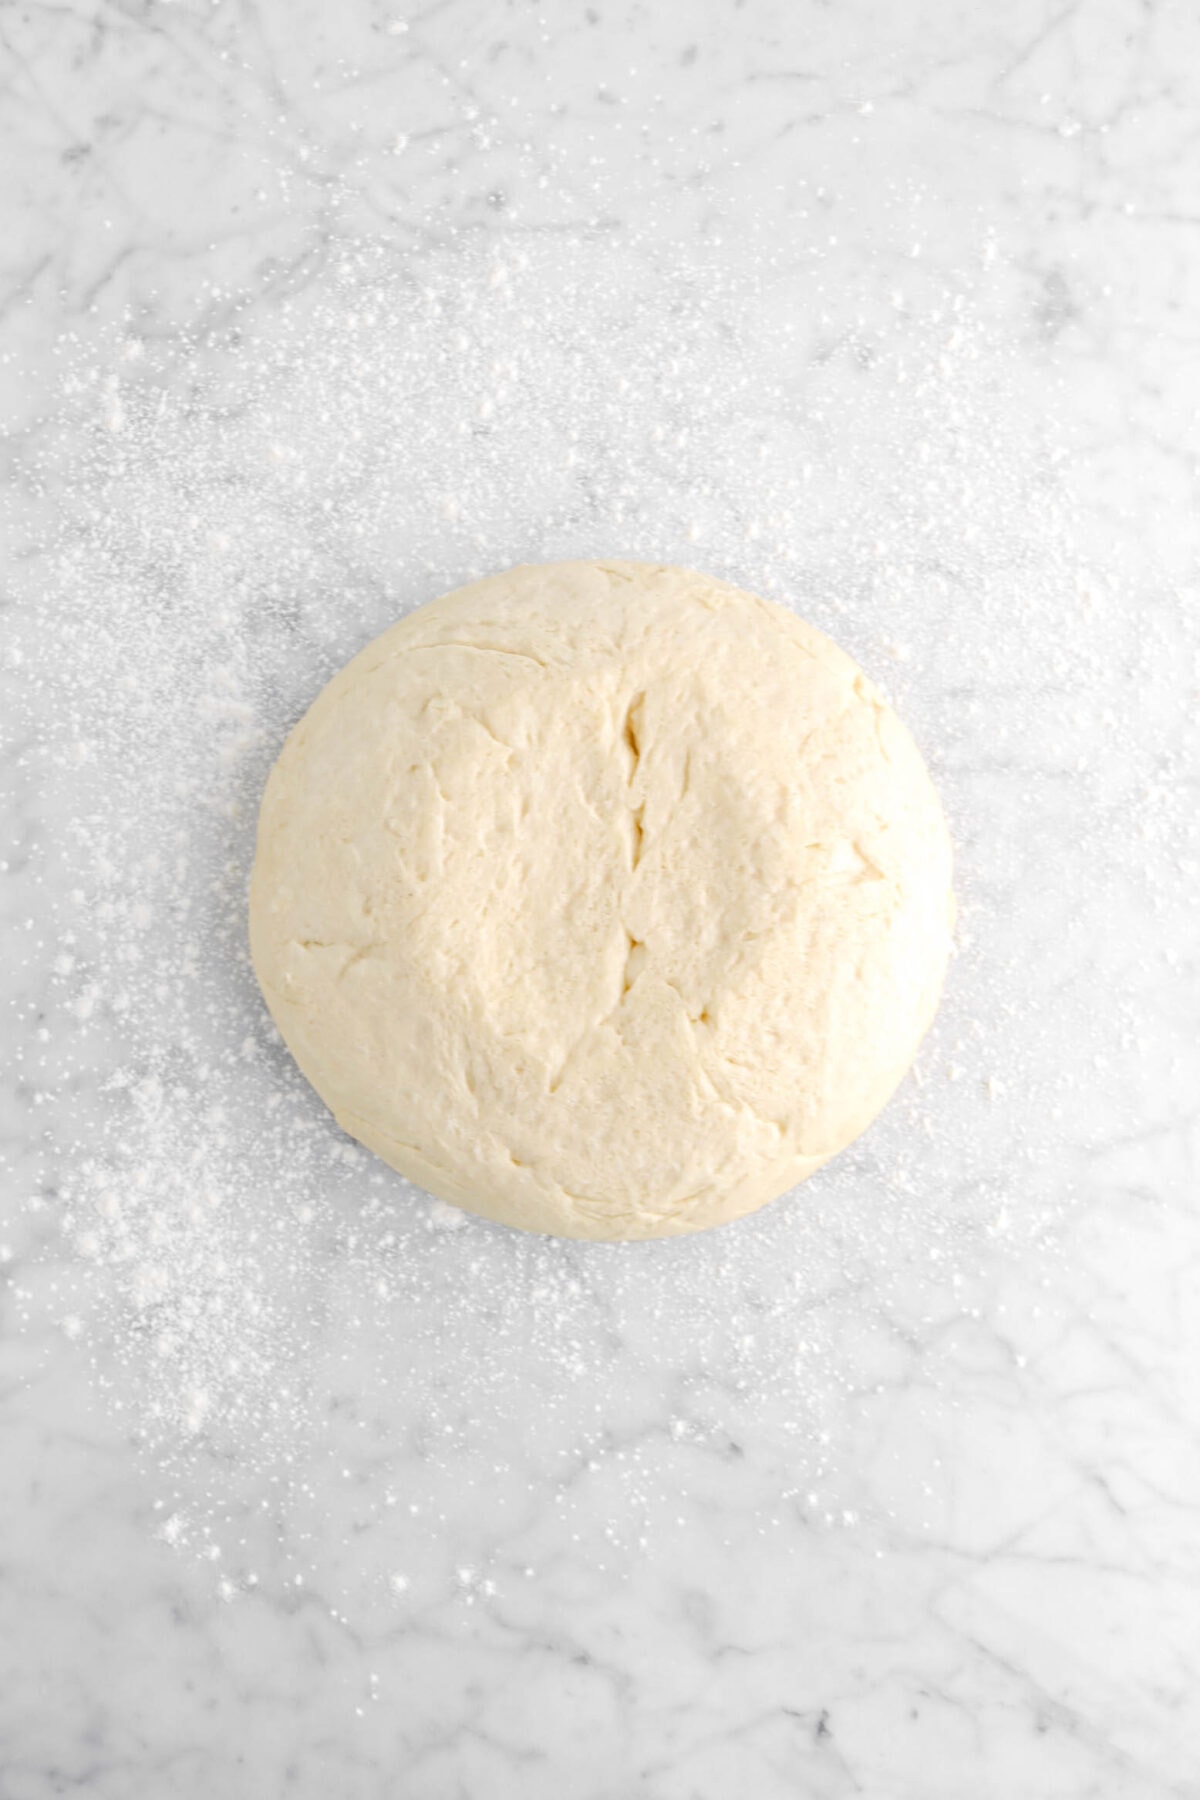 dough on floured marble